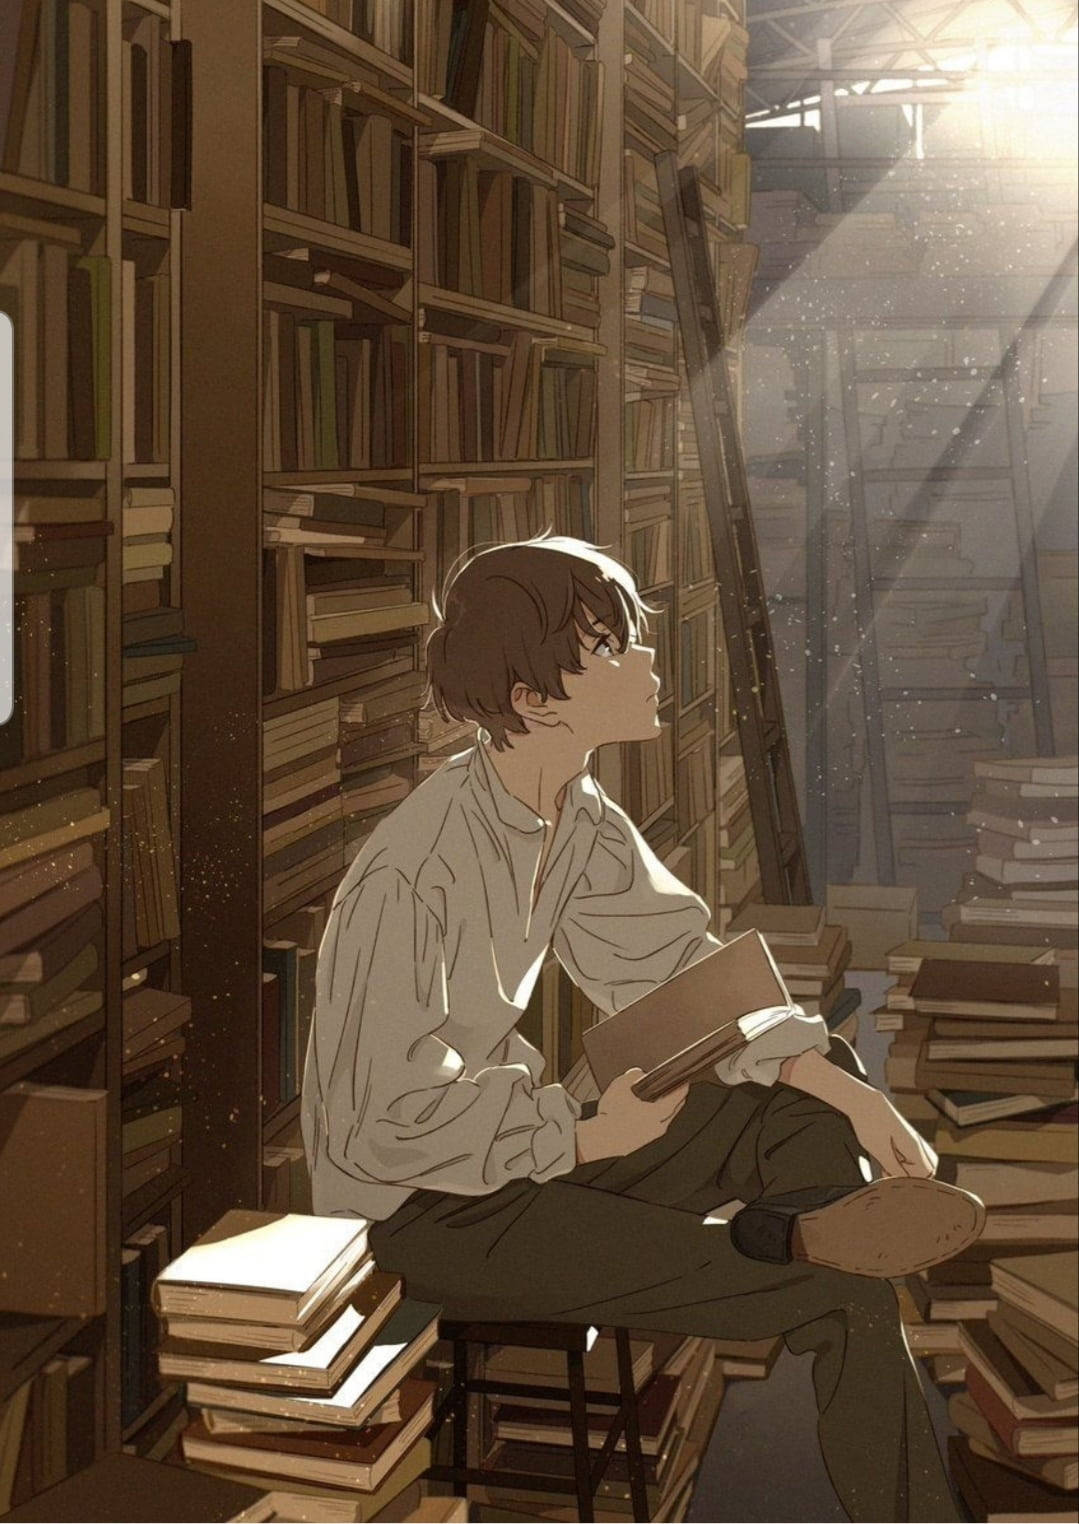 Anime Boy On A Dump Of Books